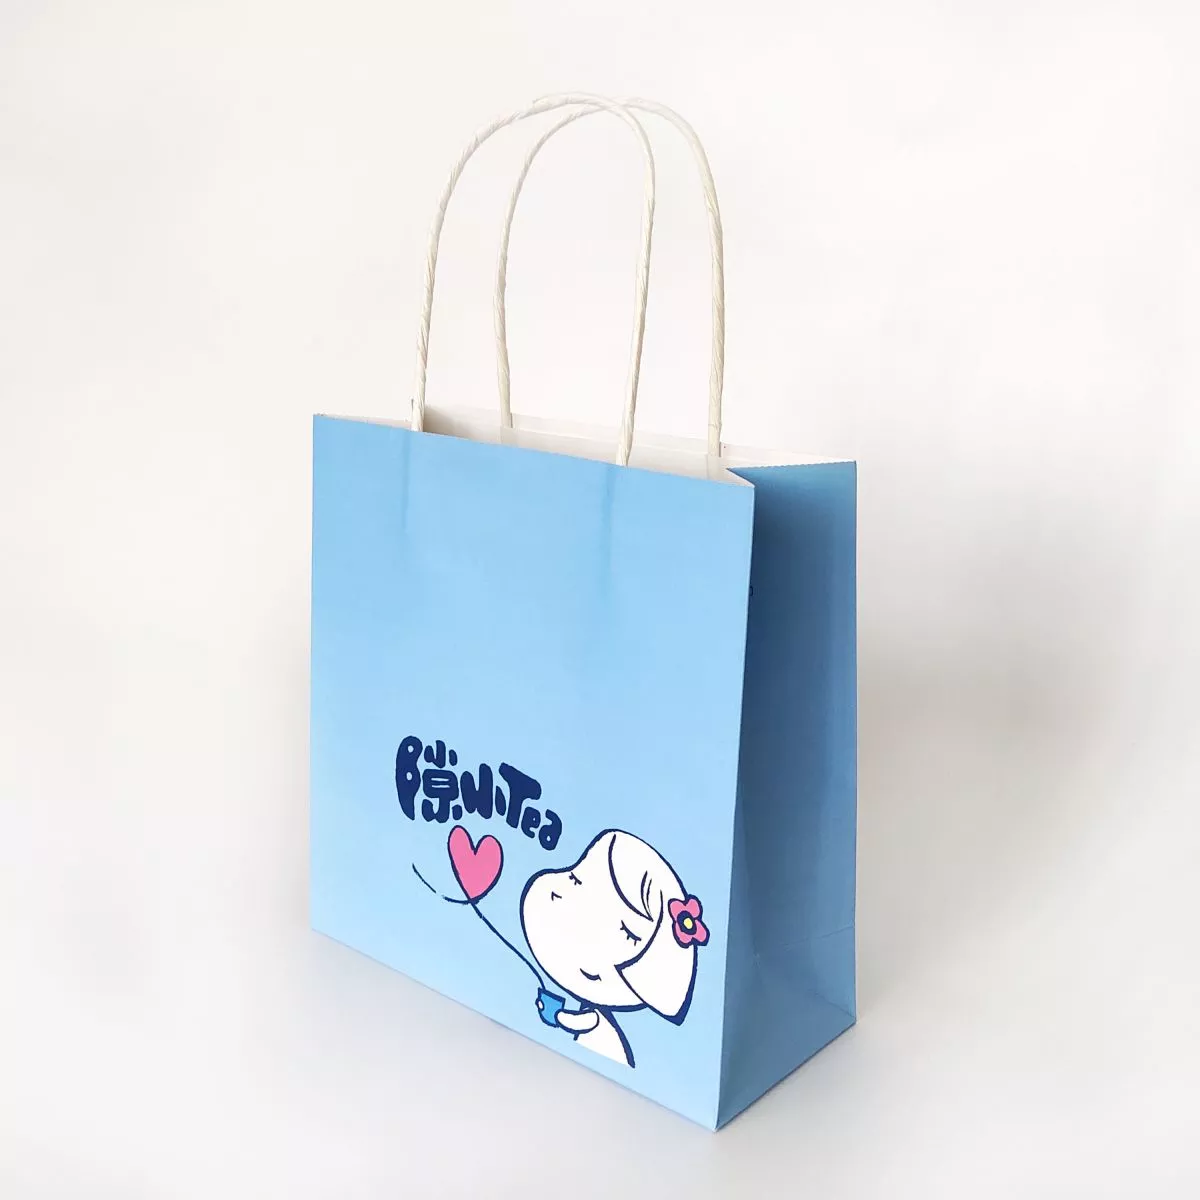 GB021 Cartoon Design Cute Paper Shopping Bag for Tea